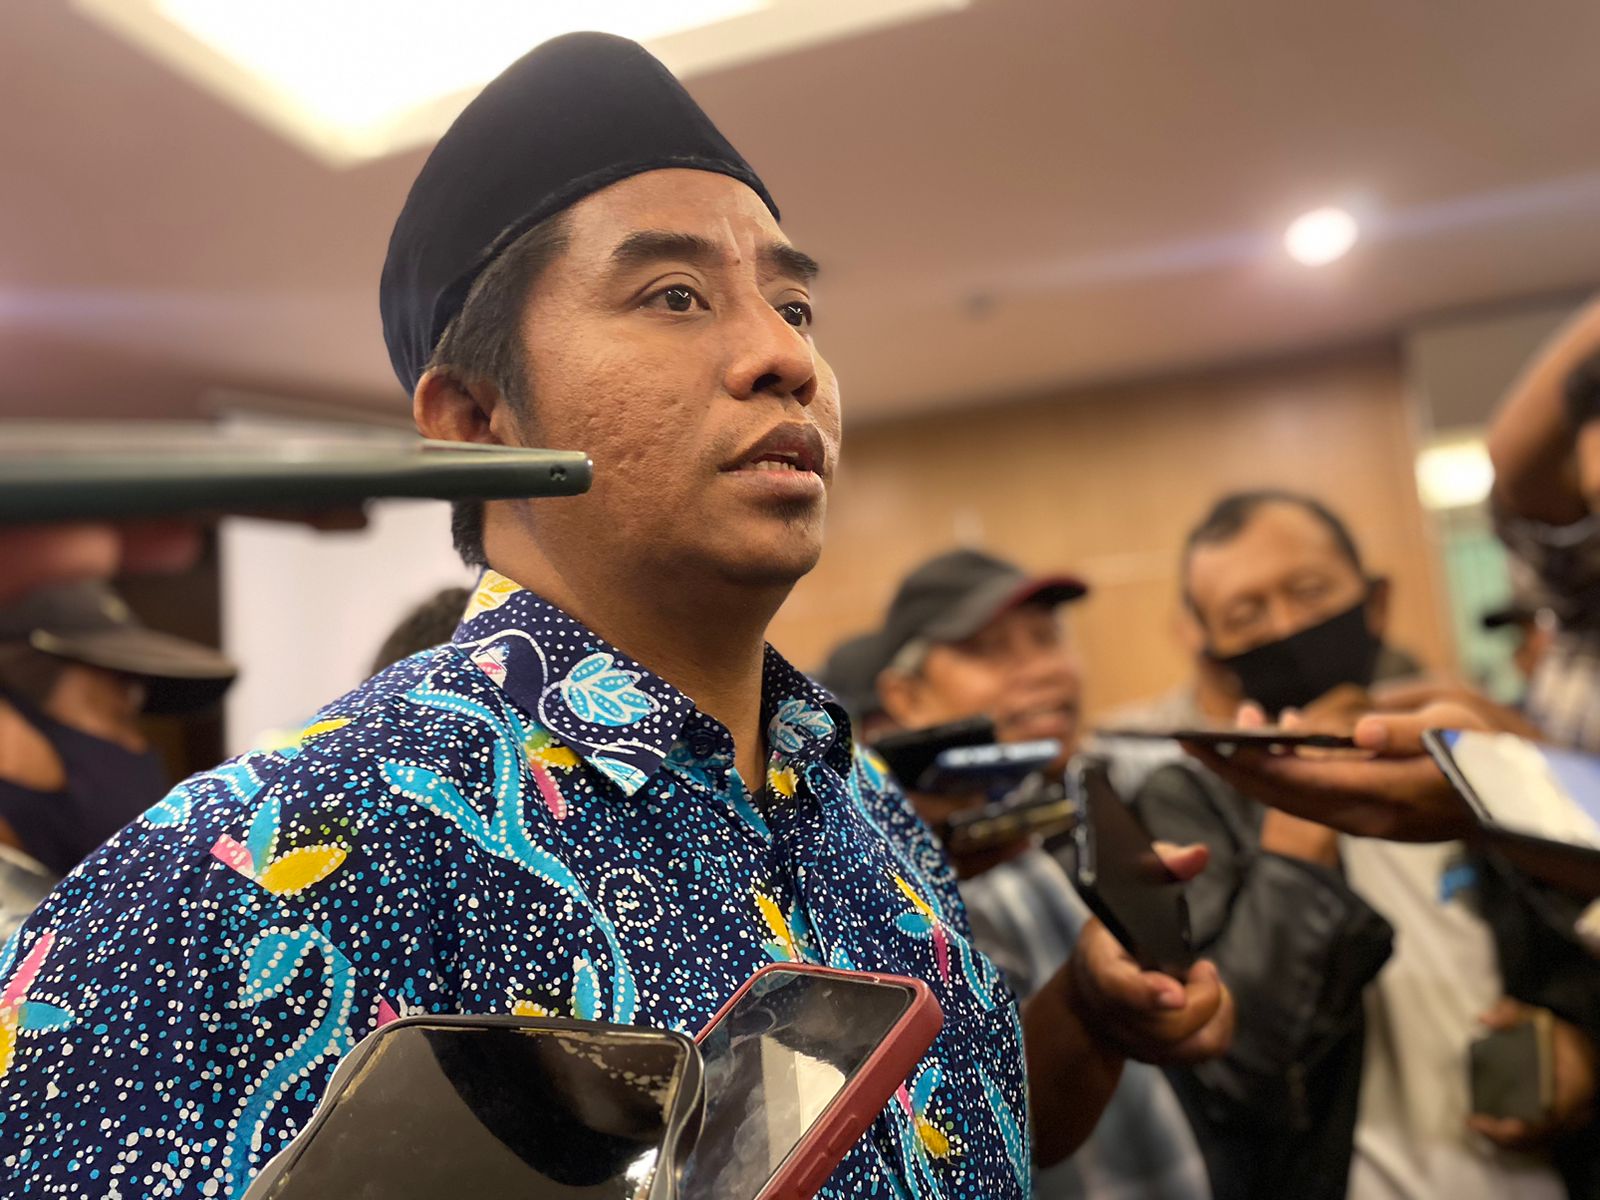 57.169 KPPS Dibutuhkan, KPU Surabaya Ingatkan Soal Surat Sehat dan Batasan Usia